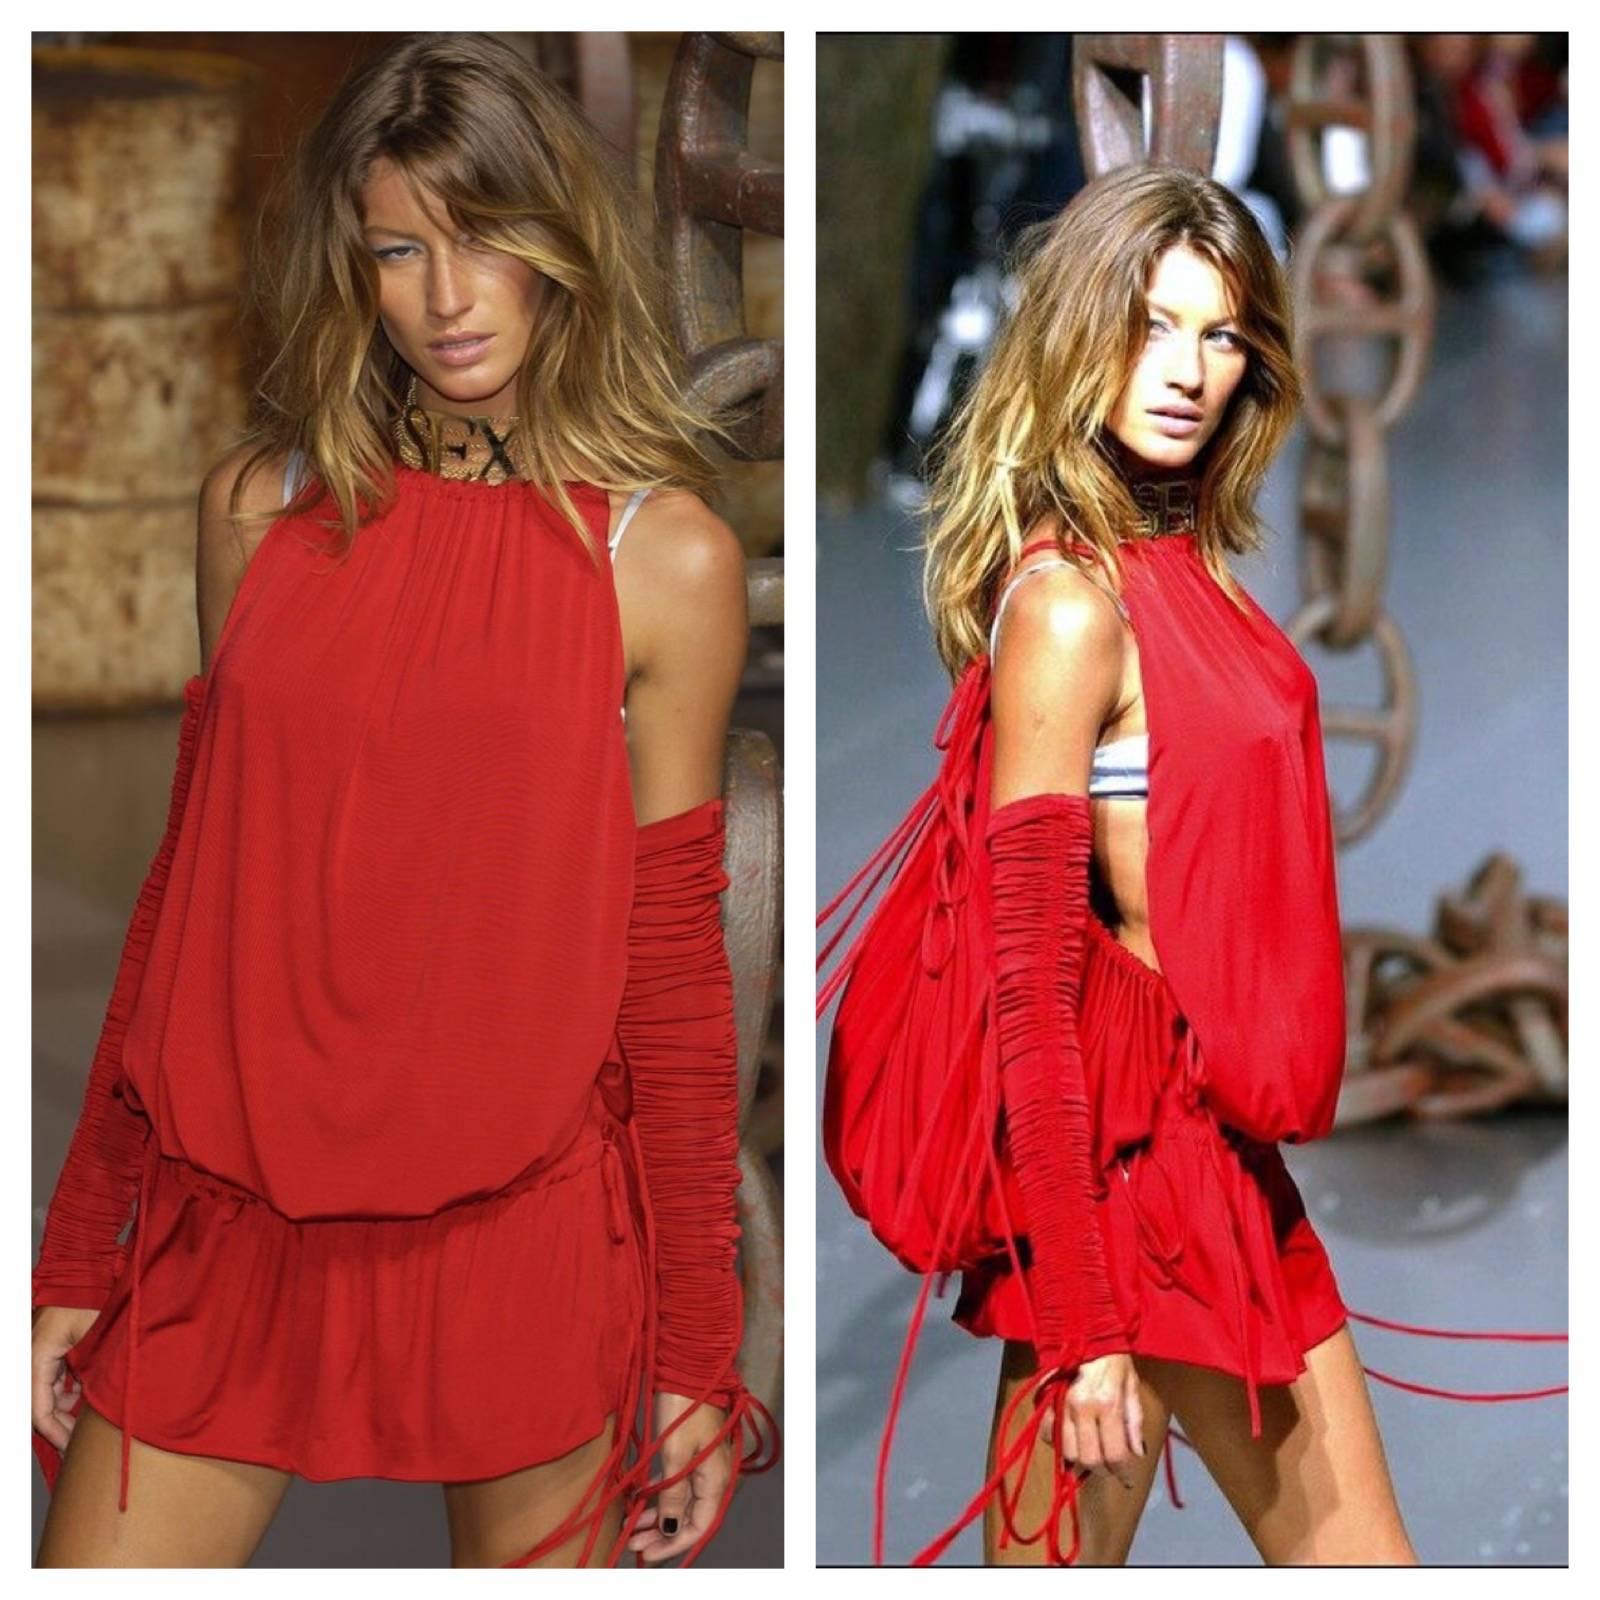 Rouge  Campagne publicitaire Dolce & Gabbana Runway - Mini robe rouge froncée aux bras, 2003 en vente